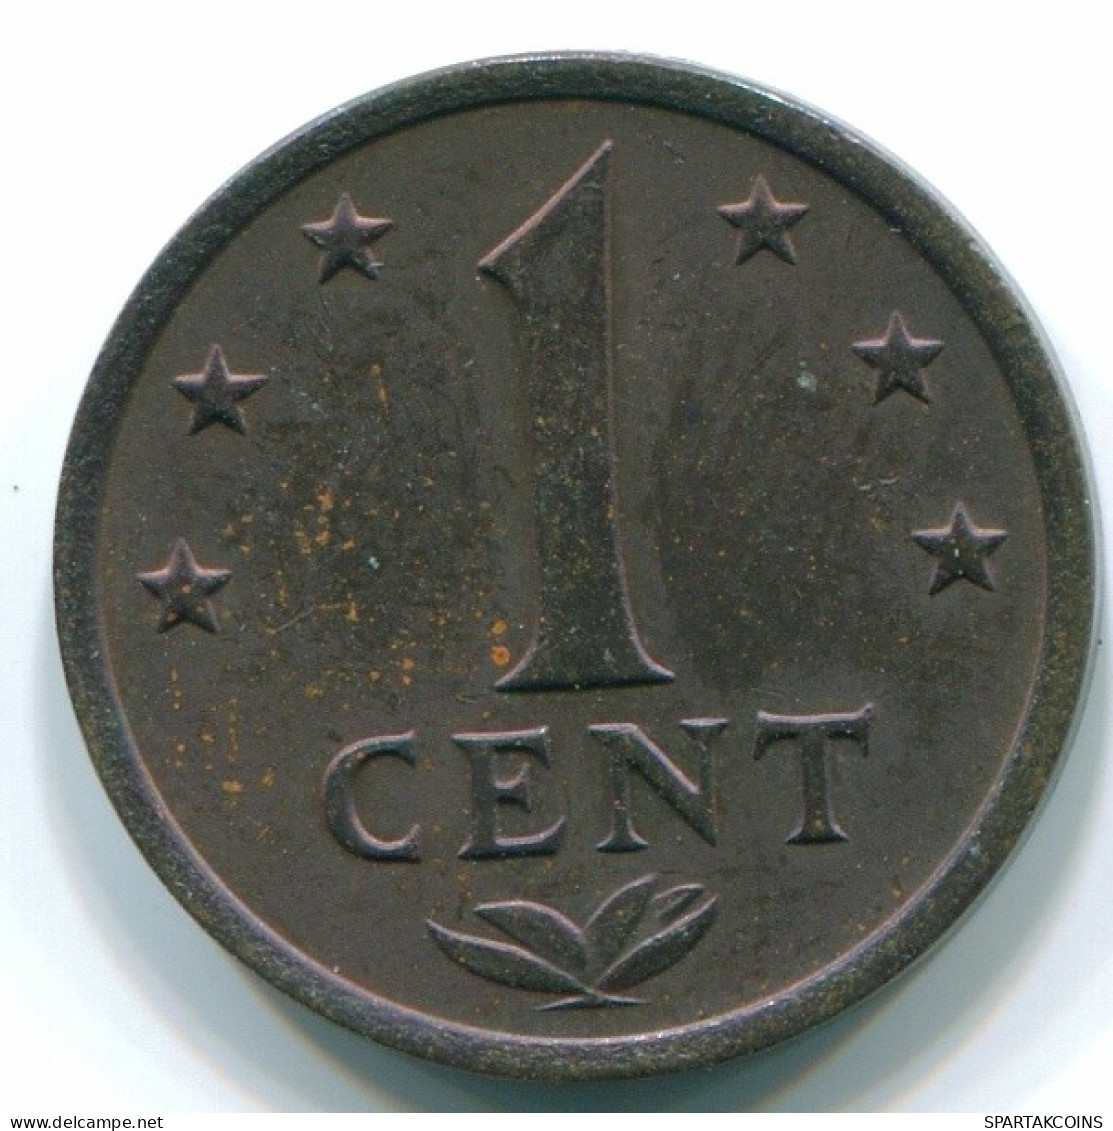 1 CENT 1975 NIEDERLÄNDISCHE ANTILLEN Bronze Koloniale Münze #S10674.D.A - Nederlandse Antillen